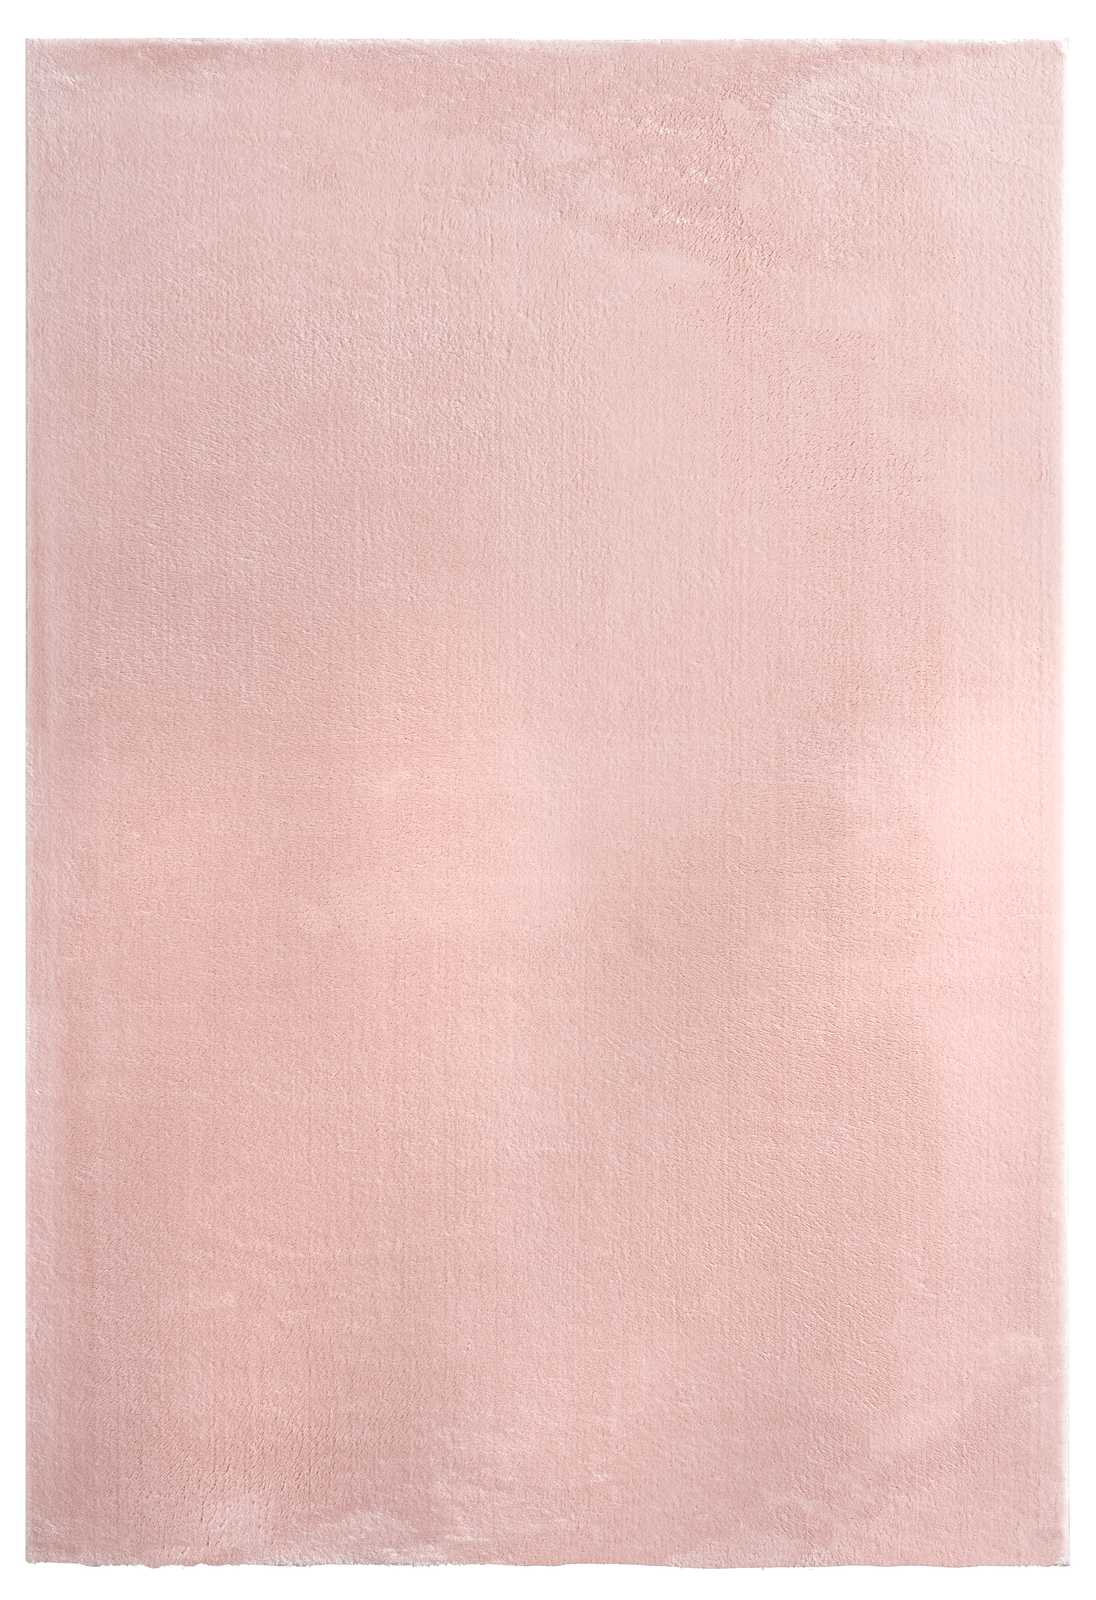             Tapis rose à poils longs - 170 x 120 cm
        